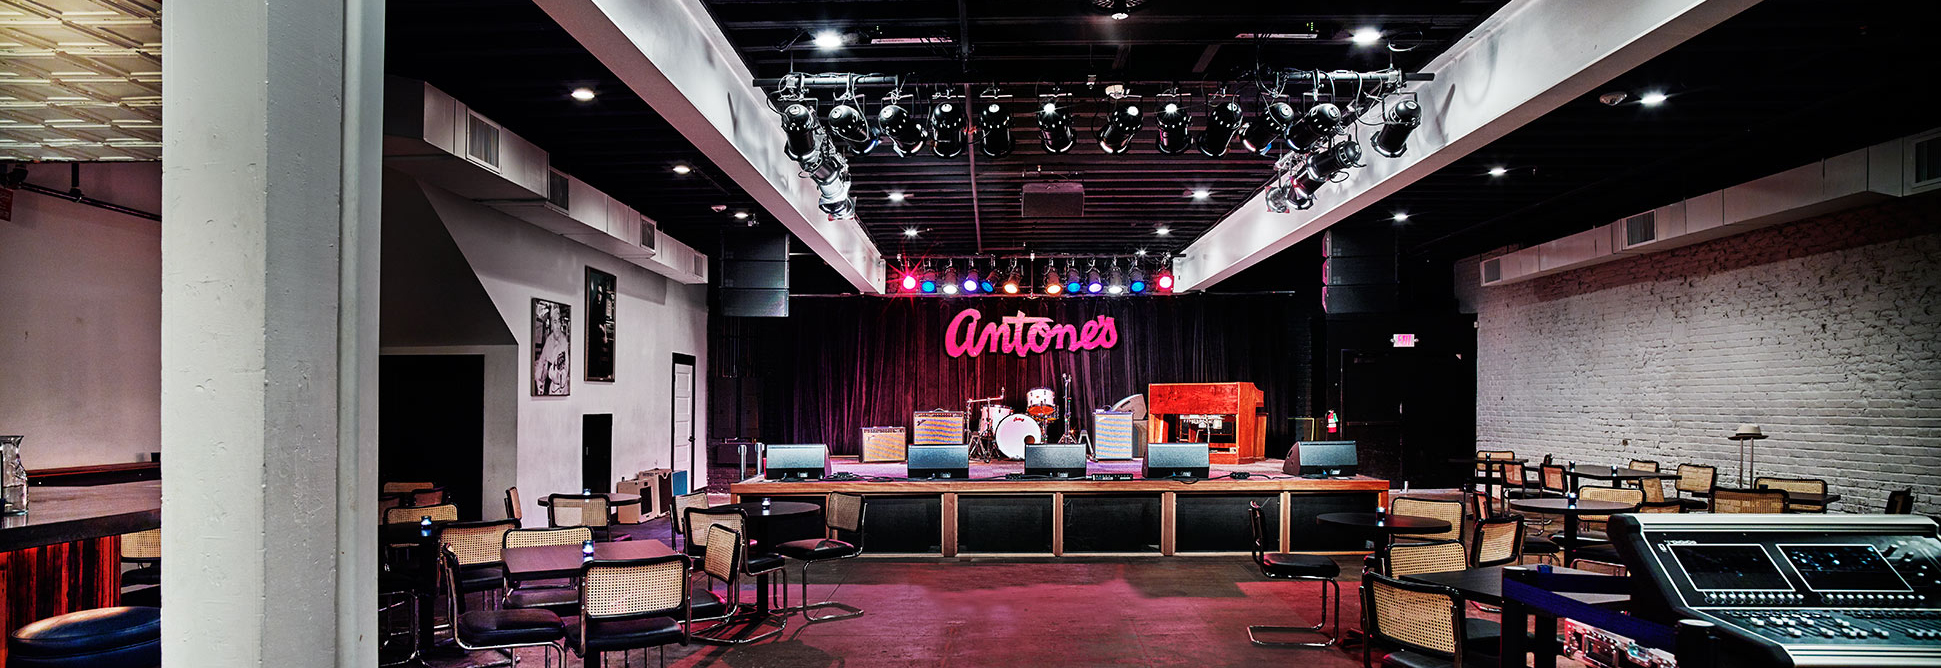 Antone's Austin